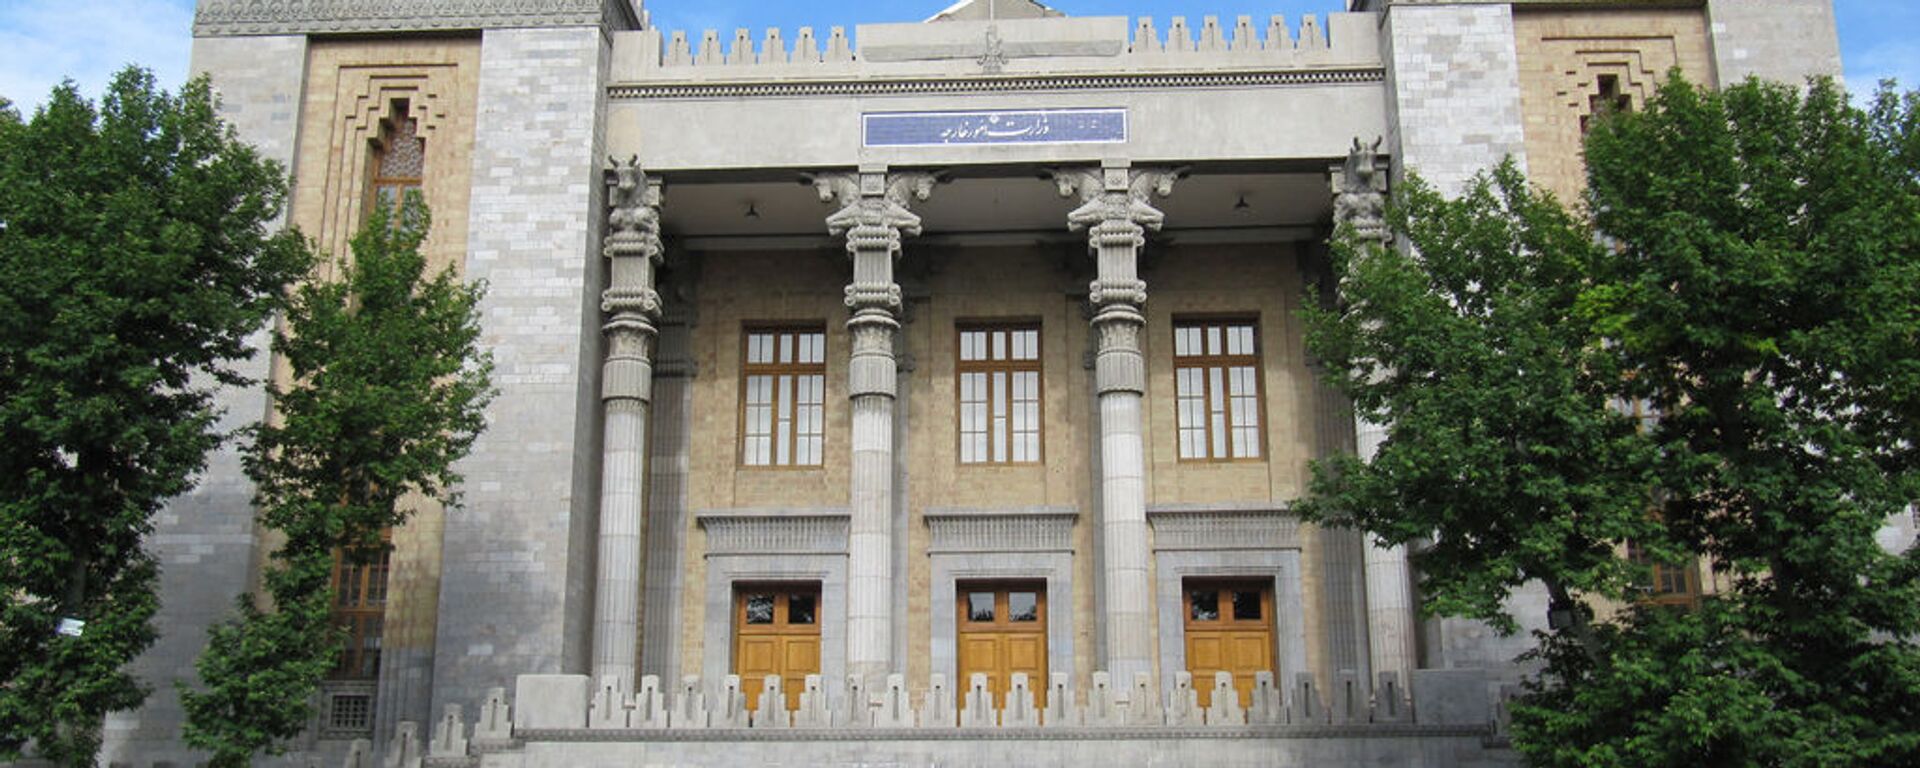 Здание МИД Исламской Республики Иран - Sputnik Армения, 1920, 04.10.2021